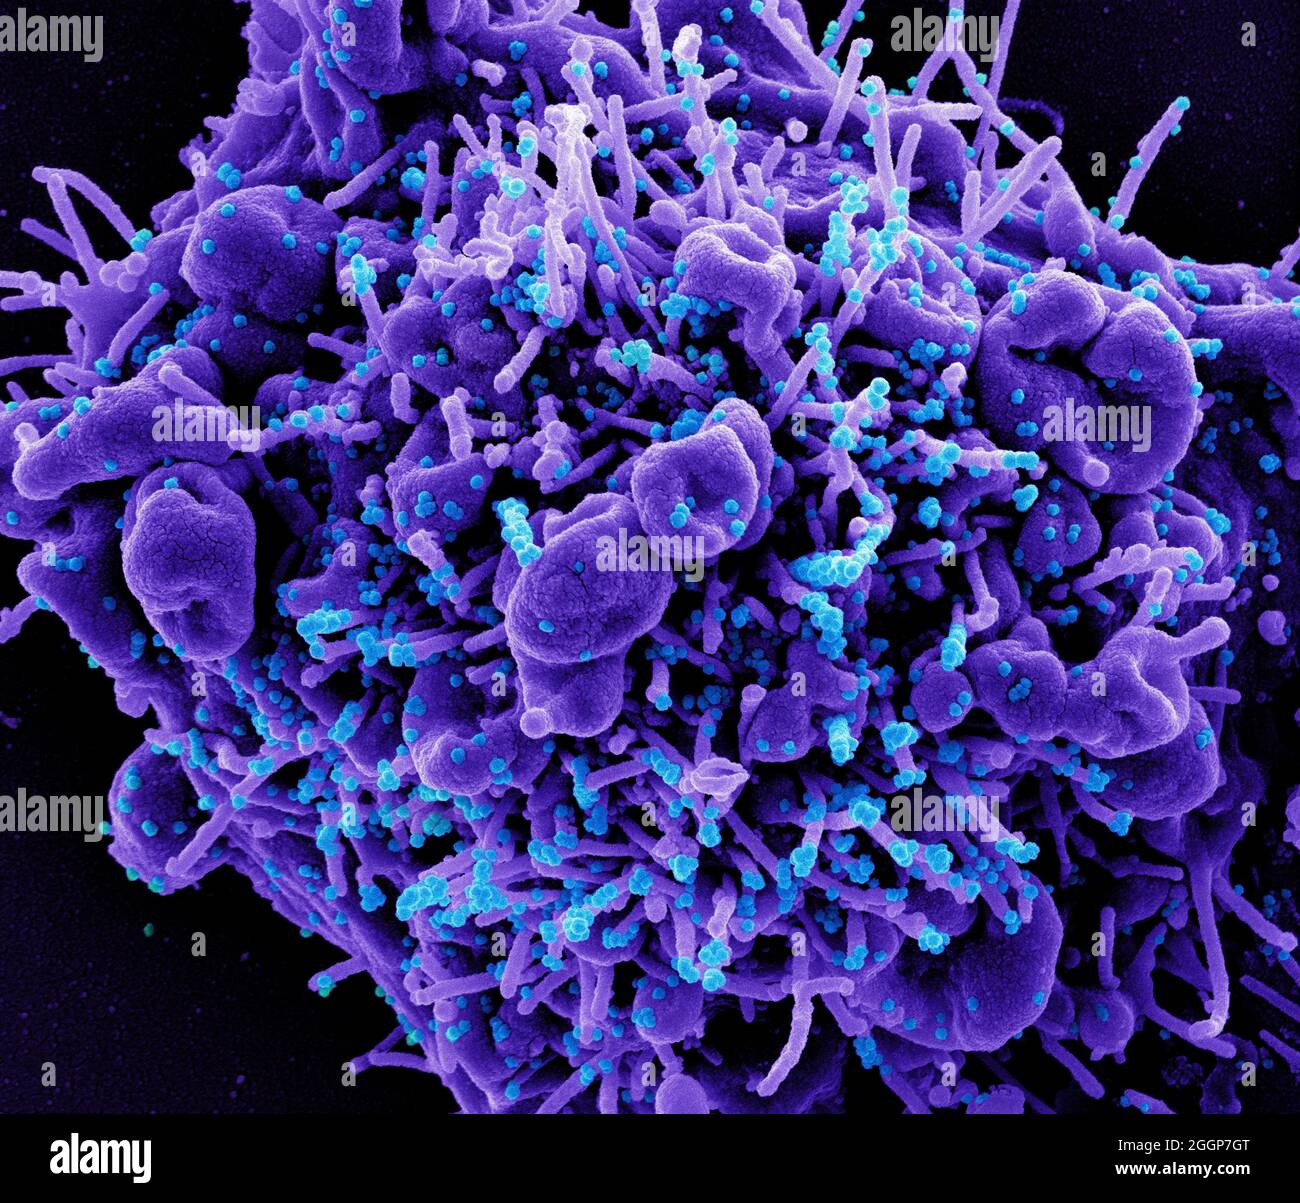 Micrografia elettronica a scansione colorata di una cellula apoptotica (viola) infettata con particelle di virus SARS-COV-2 (blu), isolate da un campione di paziente. Foto Stock